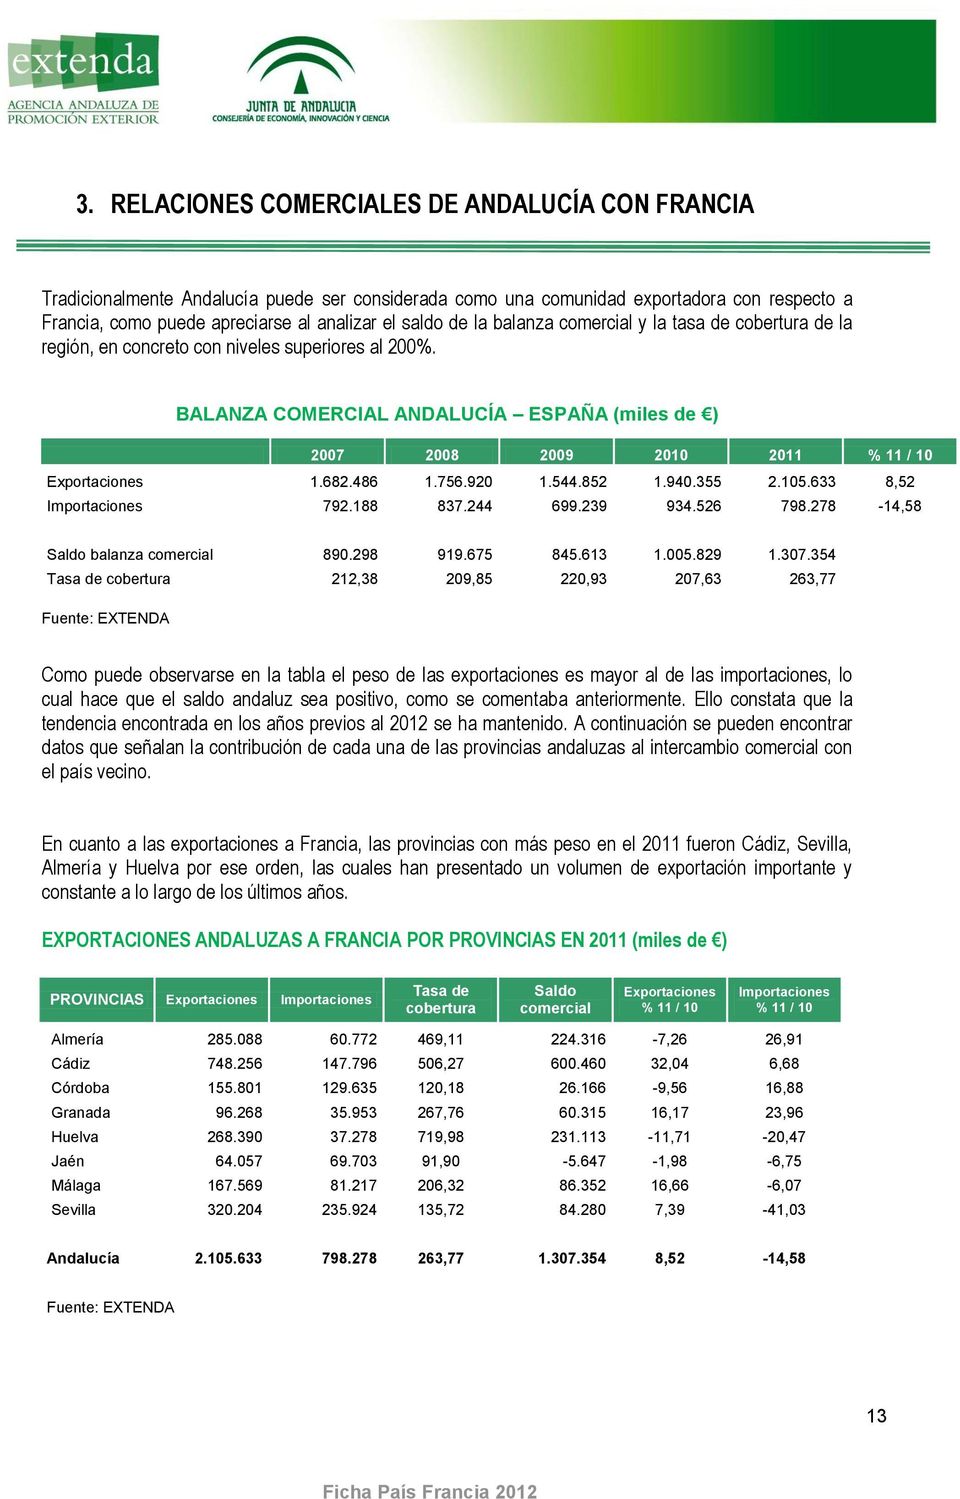 BALANZA COMERCIAL ANDALUCÍA ESPAÑA (miles de ) 2007 2008 2009 2010 2011 % 11 / 10 Exportaciones 1.682.486 1.756.920 1.544.852 1.940.355 2.105.633 8,52 Importaciones 792.188 837.244 699.239 934.